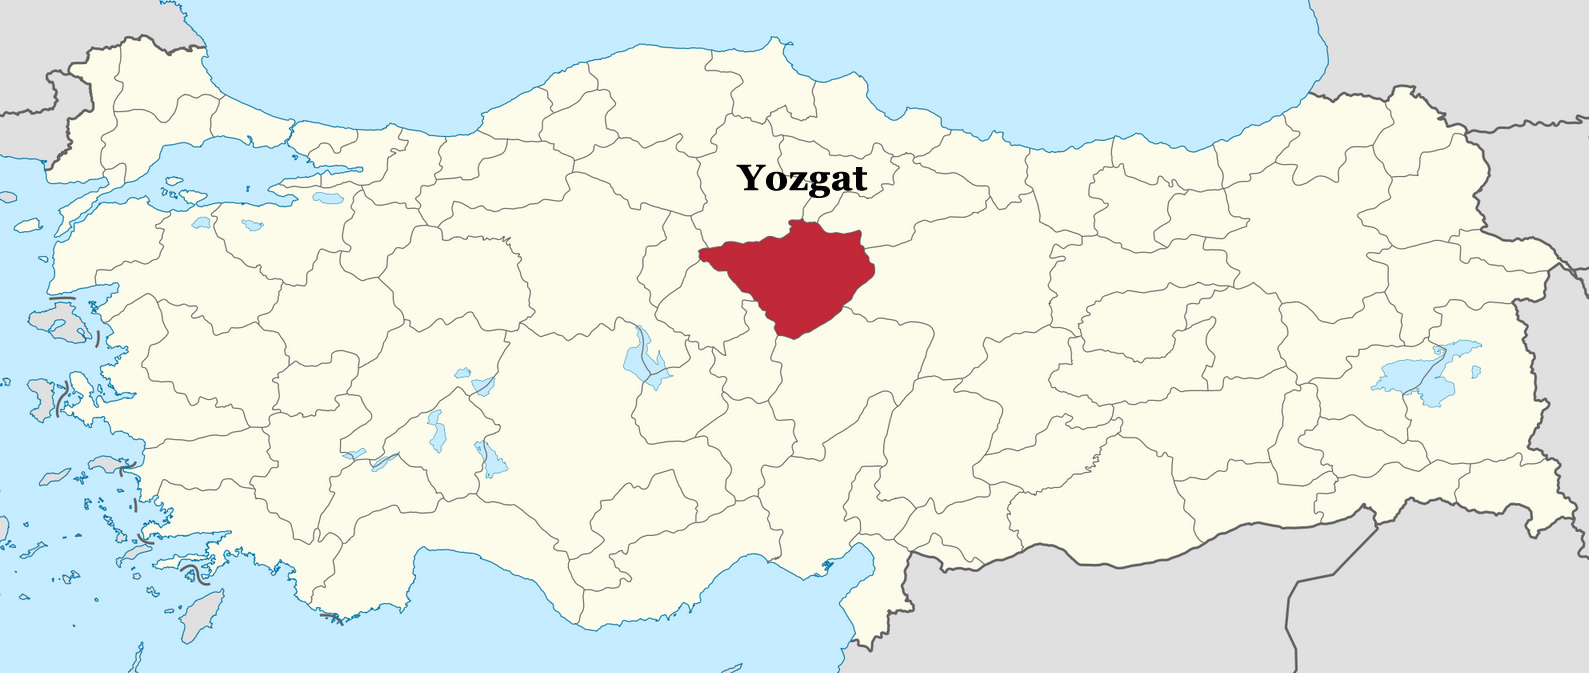 yozgat location plan